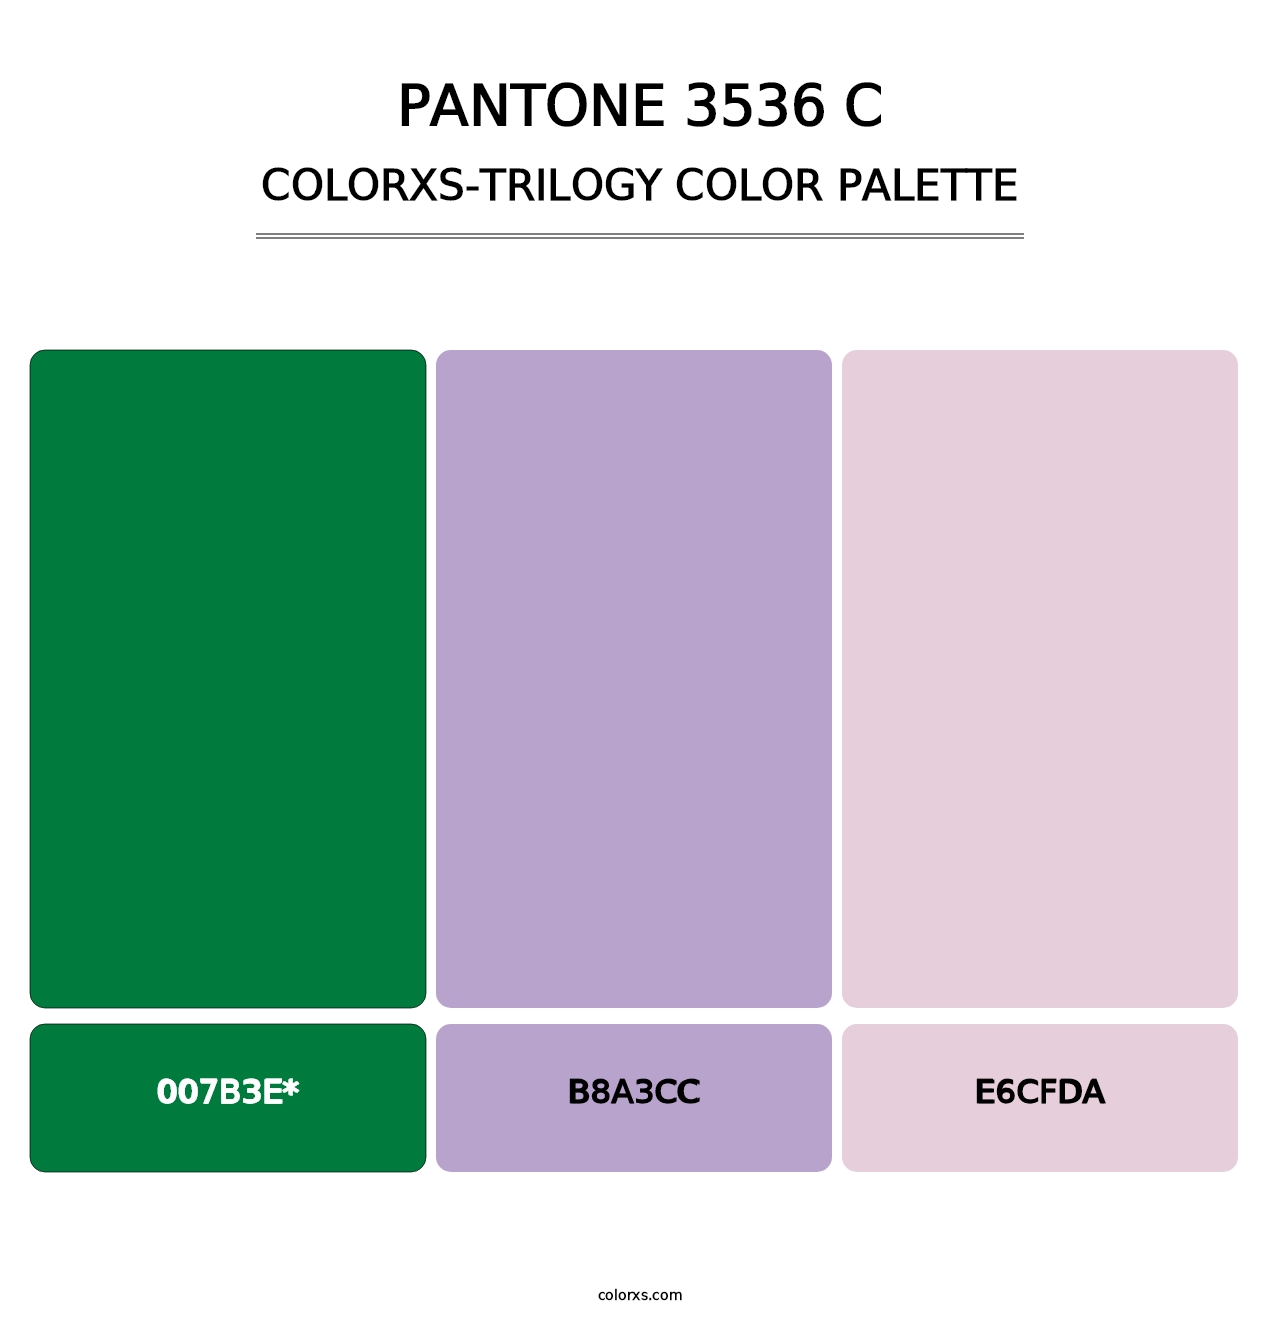 PANTONE 3536 C - Colorxs Trilogy Palette